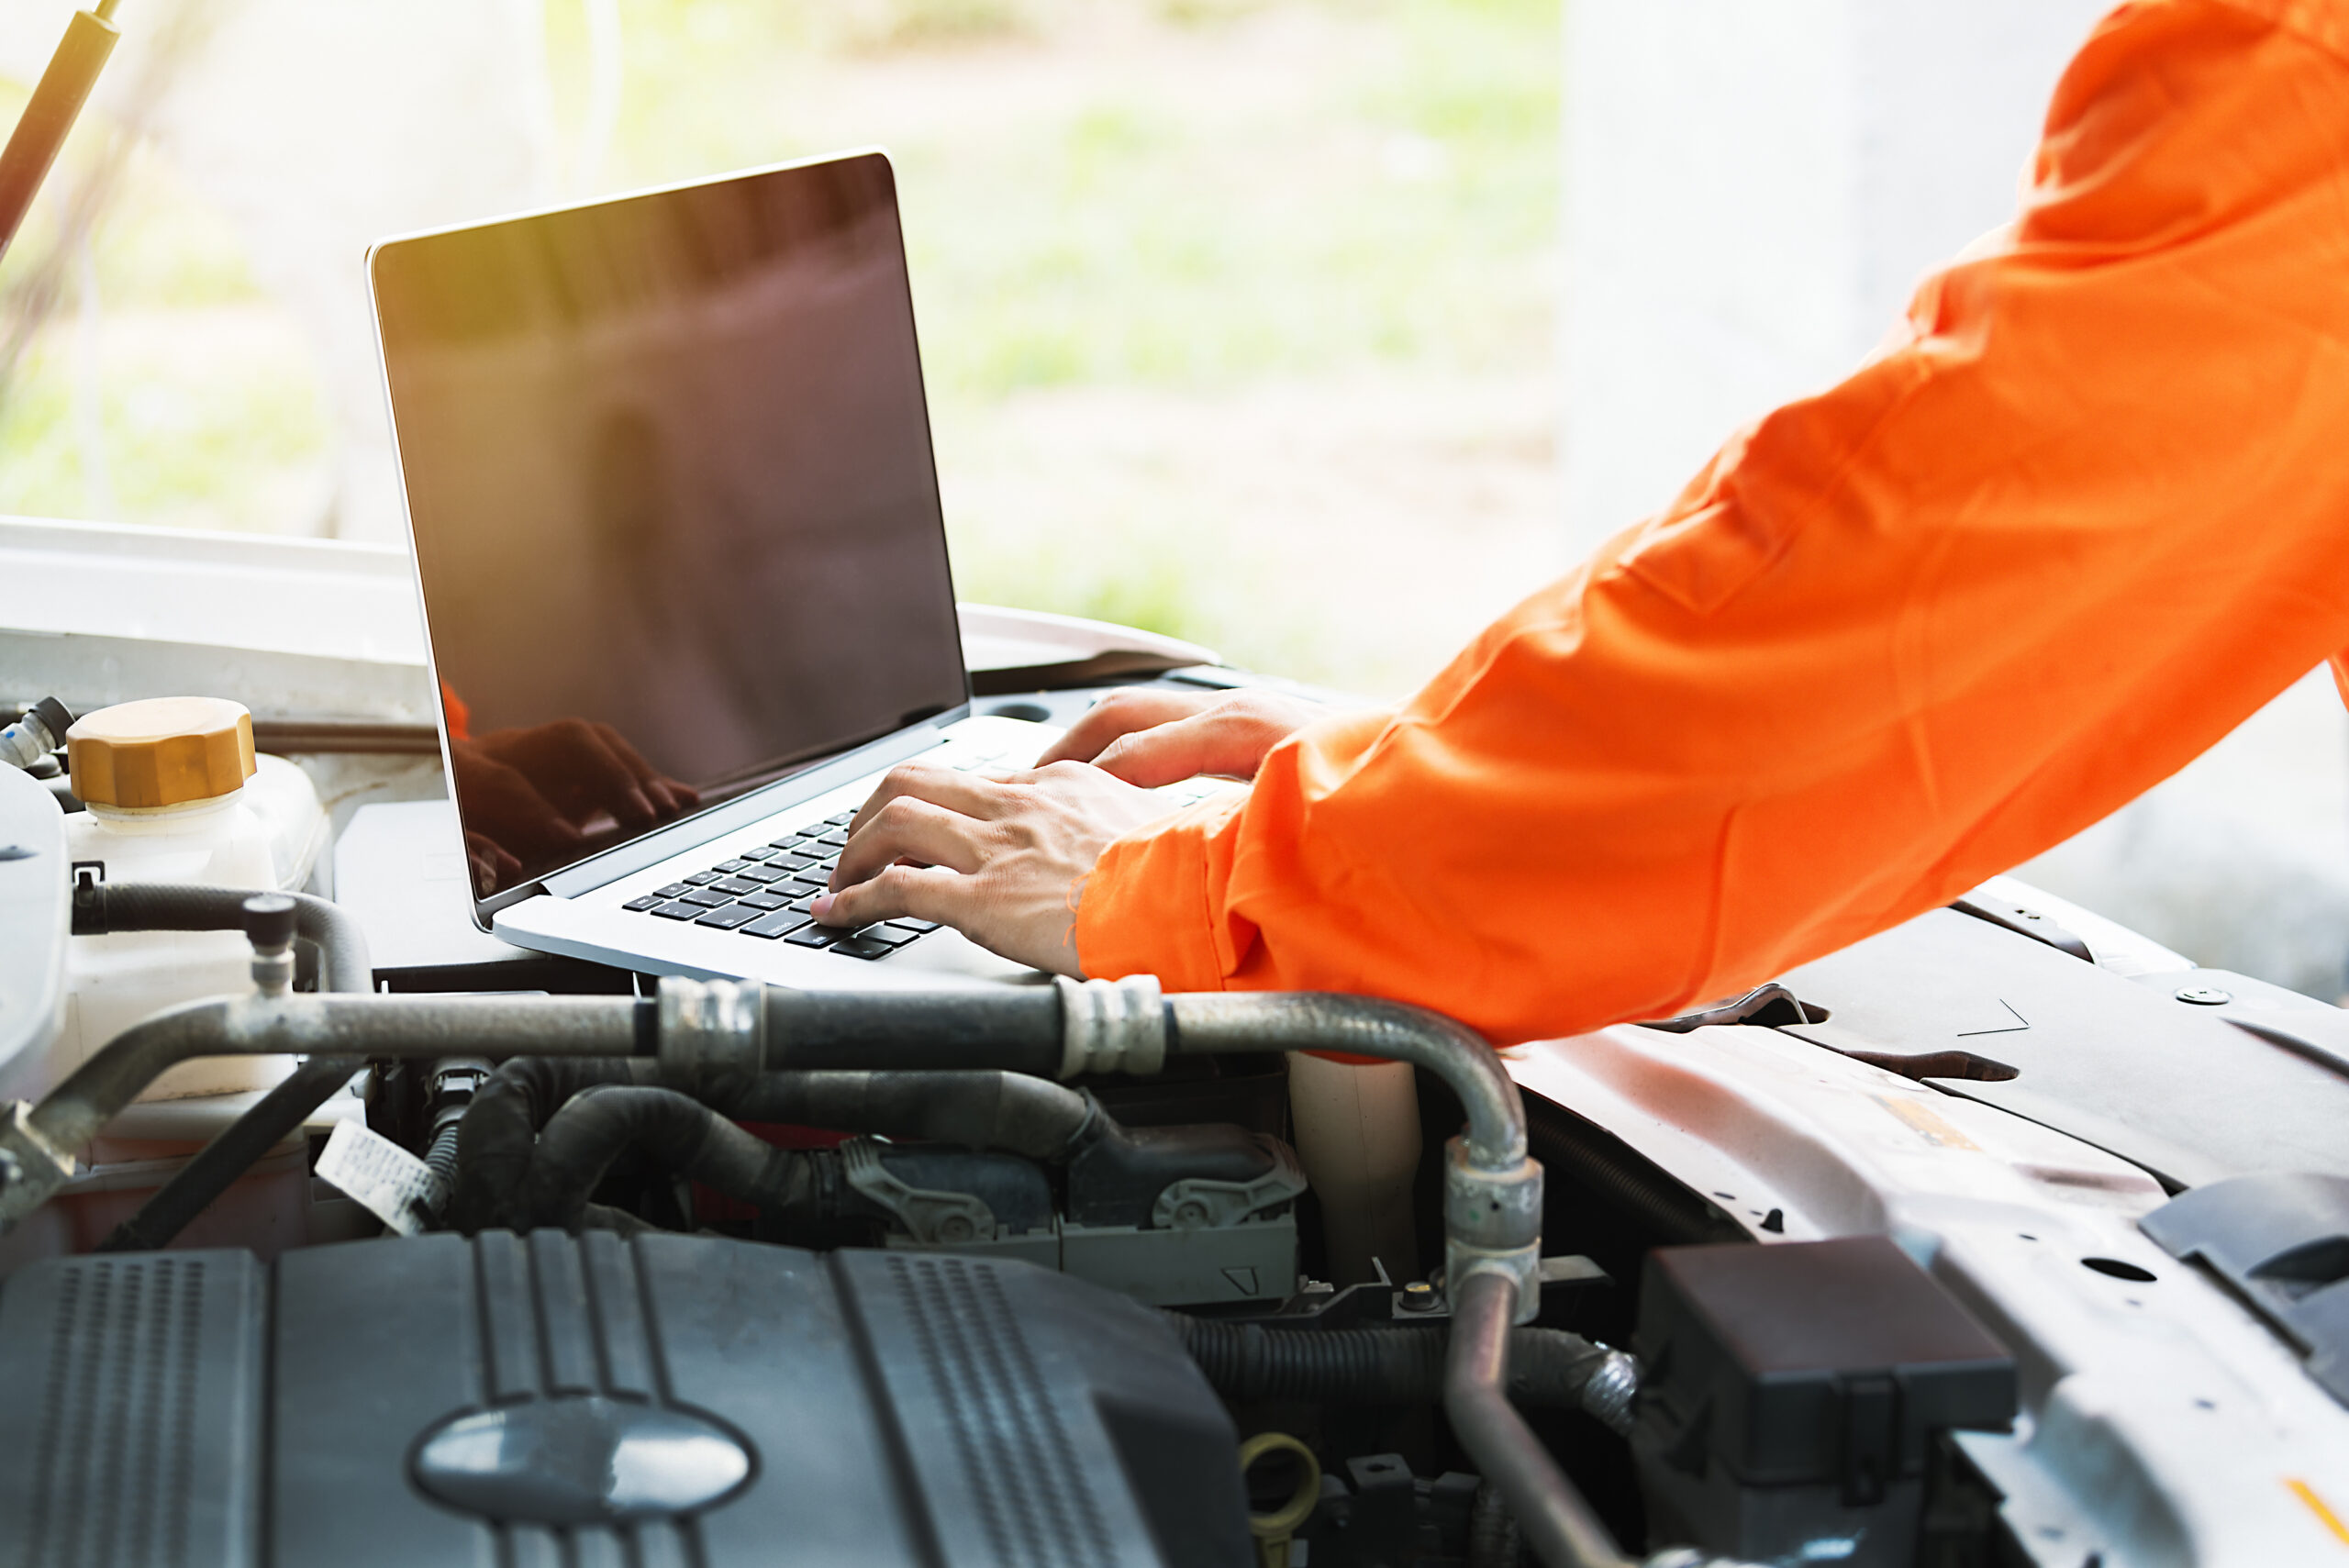 En laptop som står på en bilmotor och en person som använder laptopen